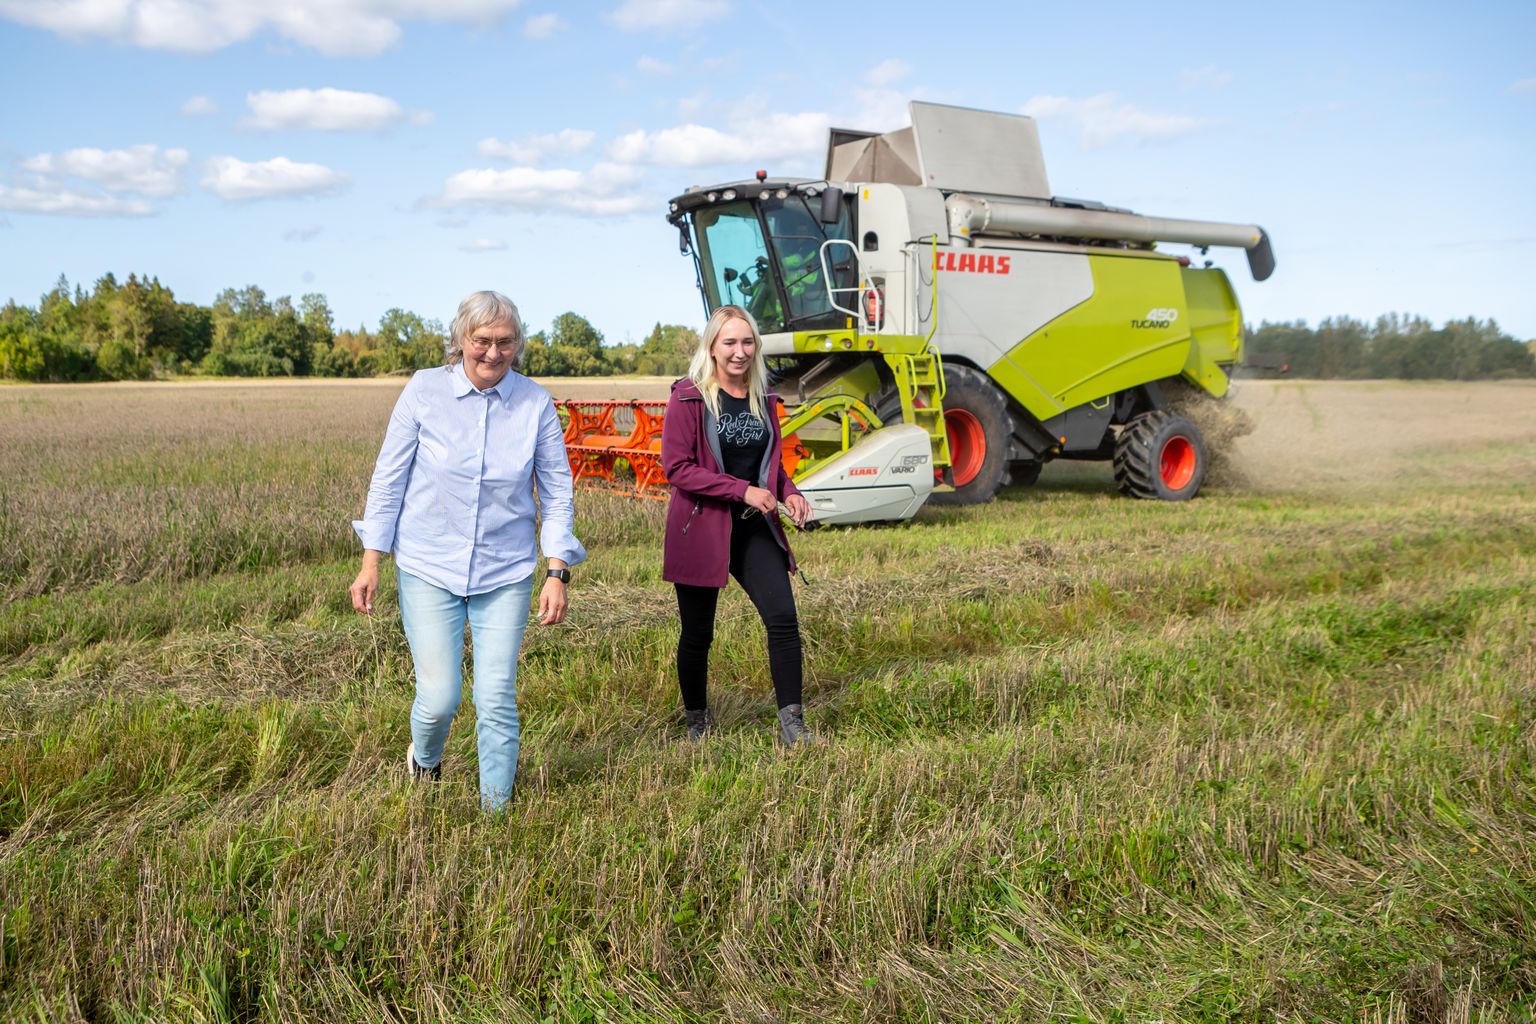 HILINE NISUKORISTUS: Audla OÜ taimekasvatajad Õnne Sööt (vasakul) ja Kristin Tärn viljapõllul, kus kombain veel 6. septembril talinisu koristas.